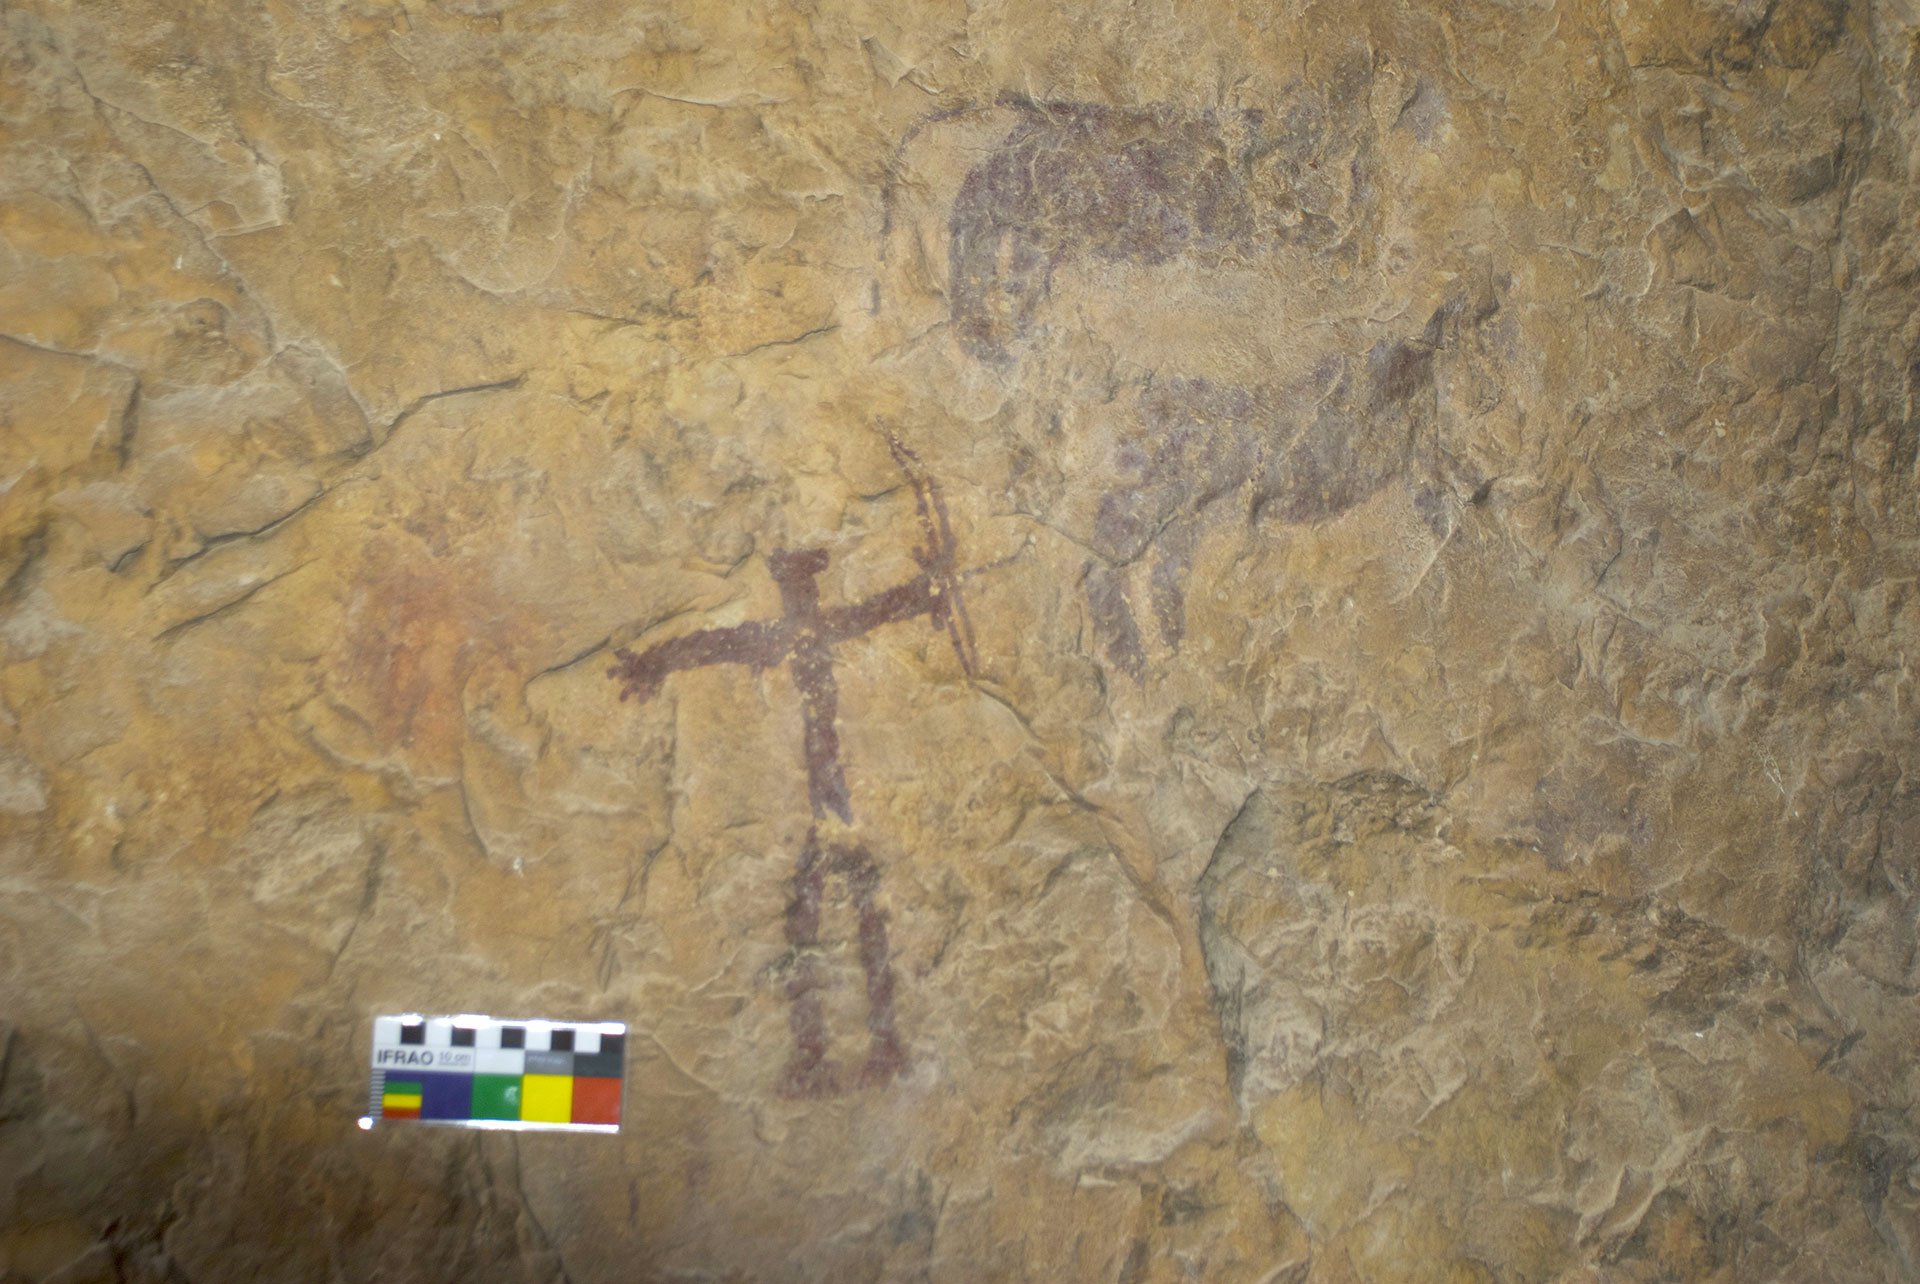 Photogaphie d'une scène de chasse de deux quadrupèdes dont possiblement un félin, par un anthropomorphe armé d'un arc. Site de la Cueva de la Serrata, Espagne.